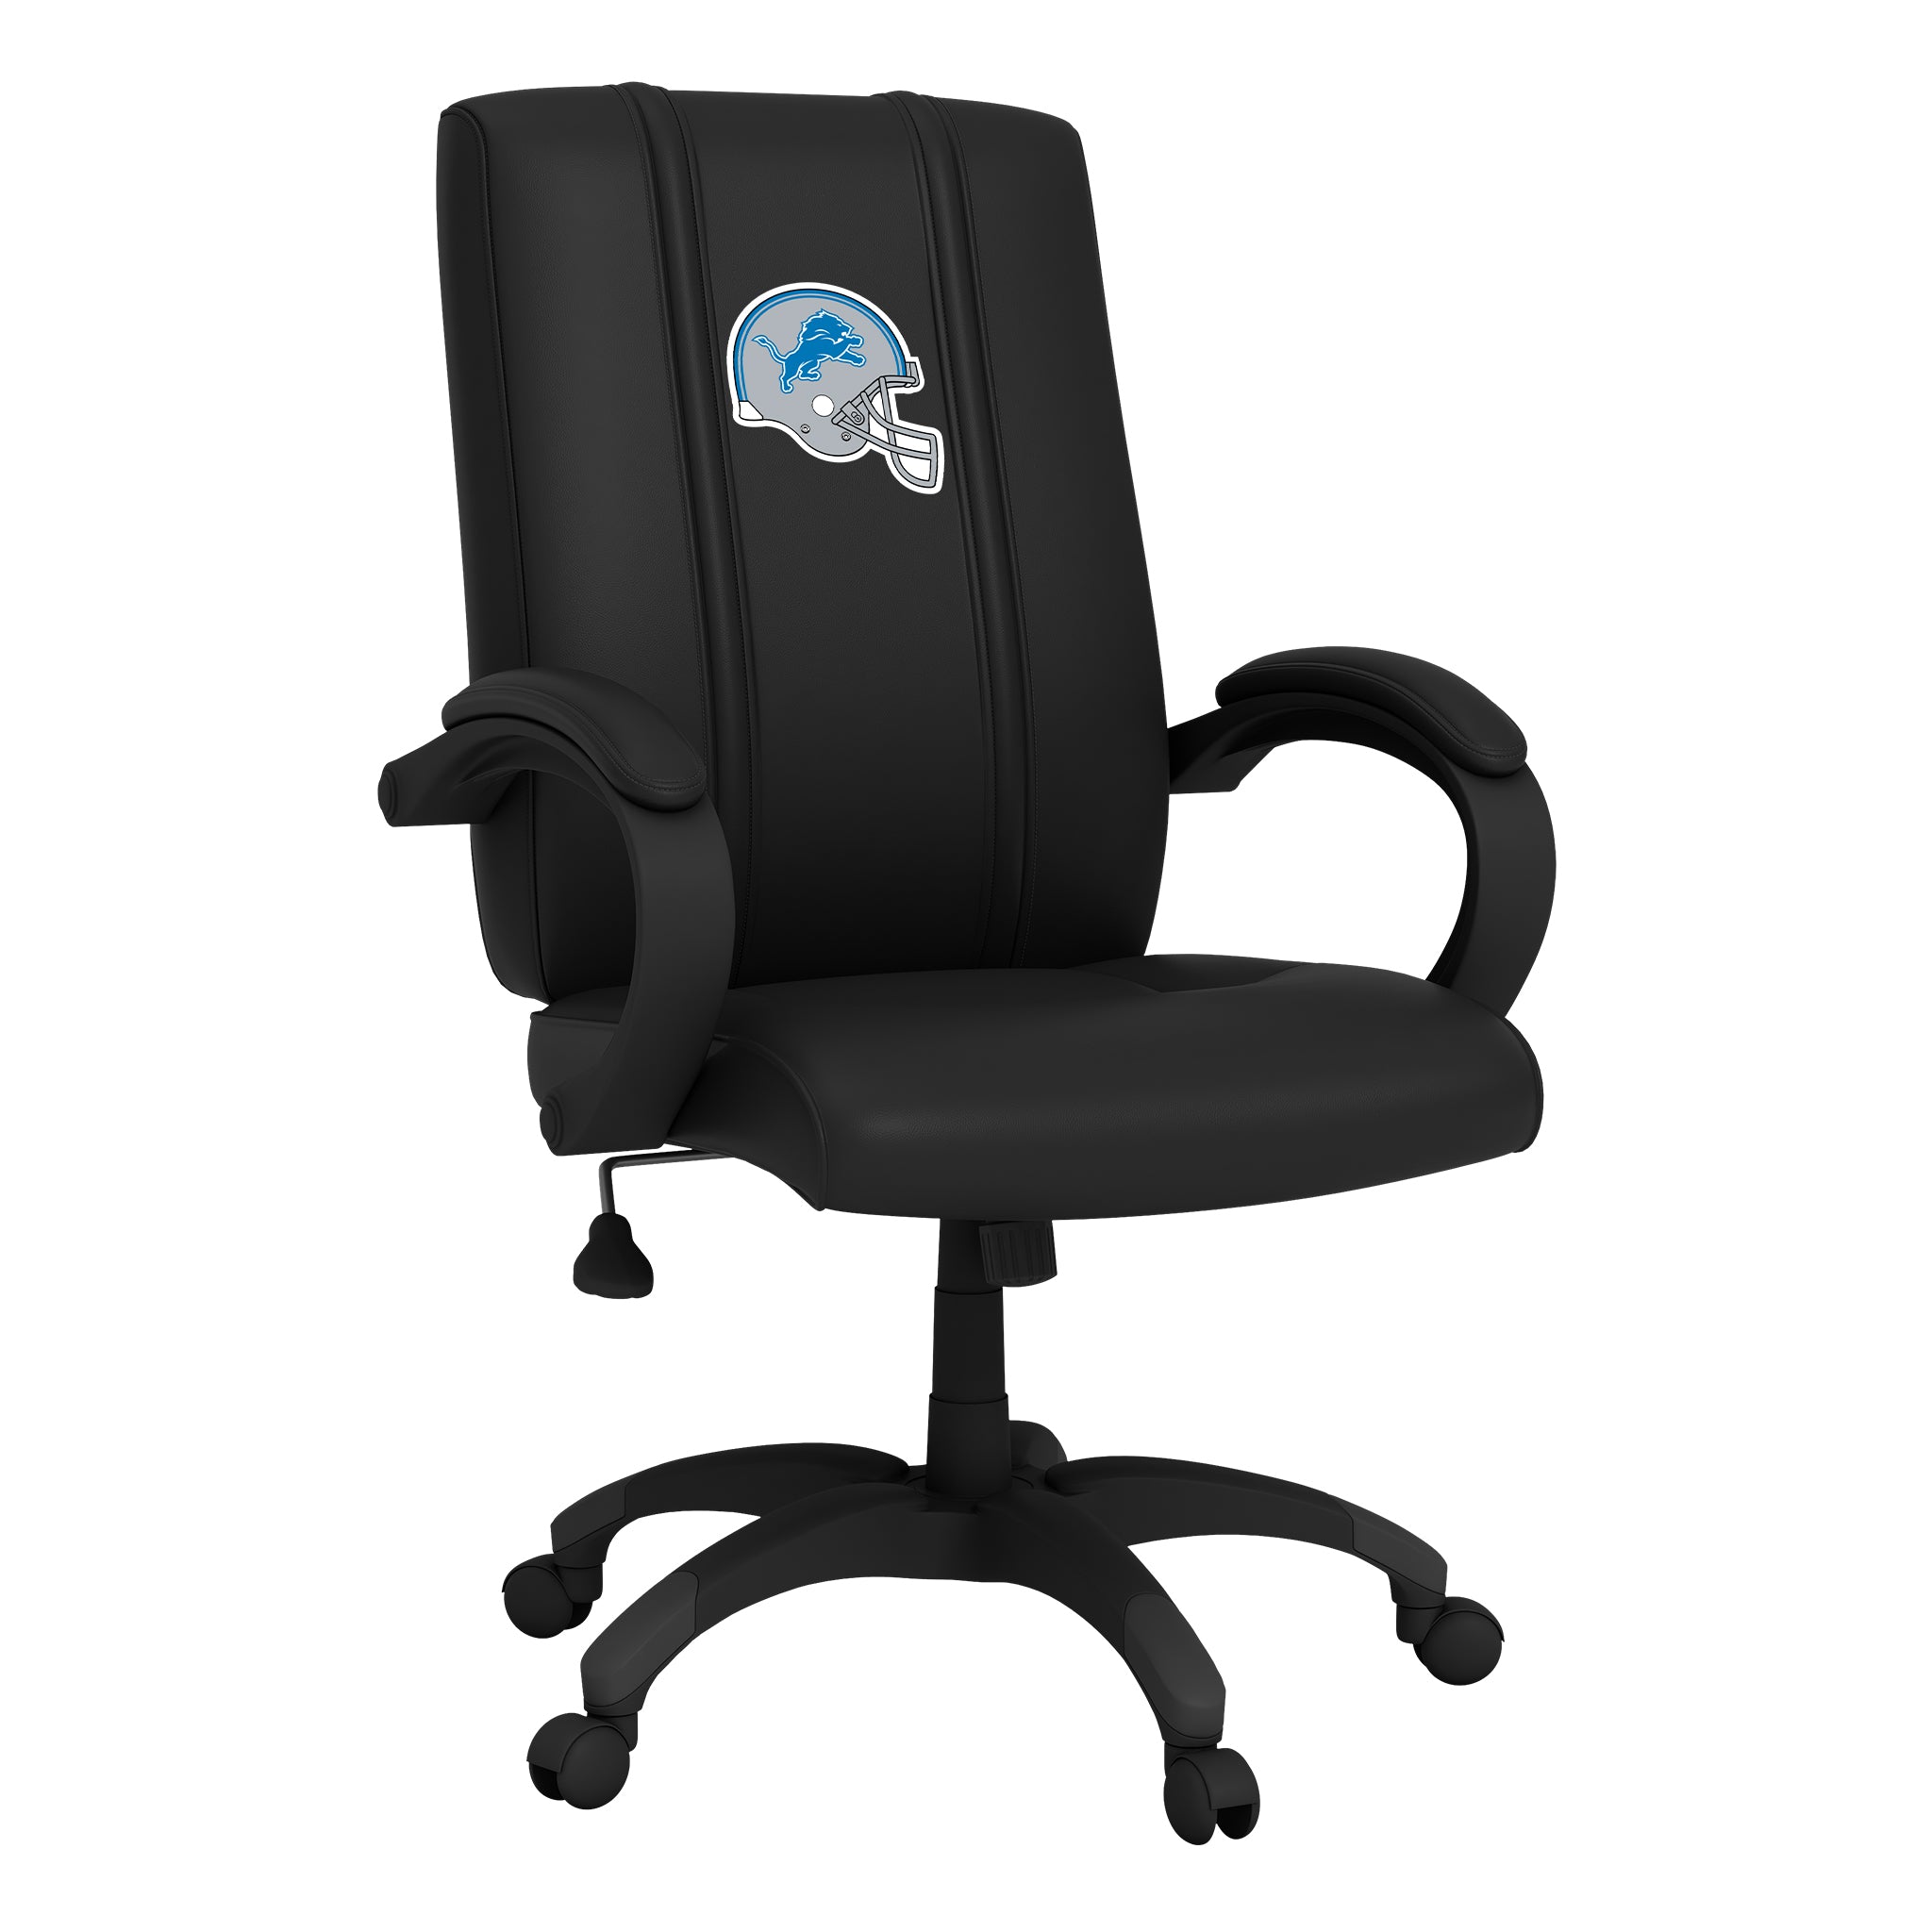 Detroit Lions Office Chair 1000